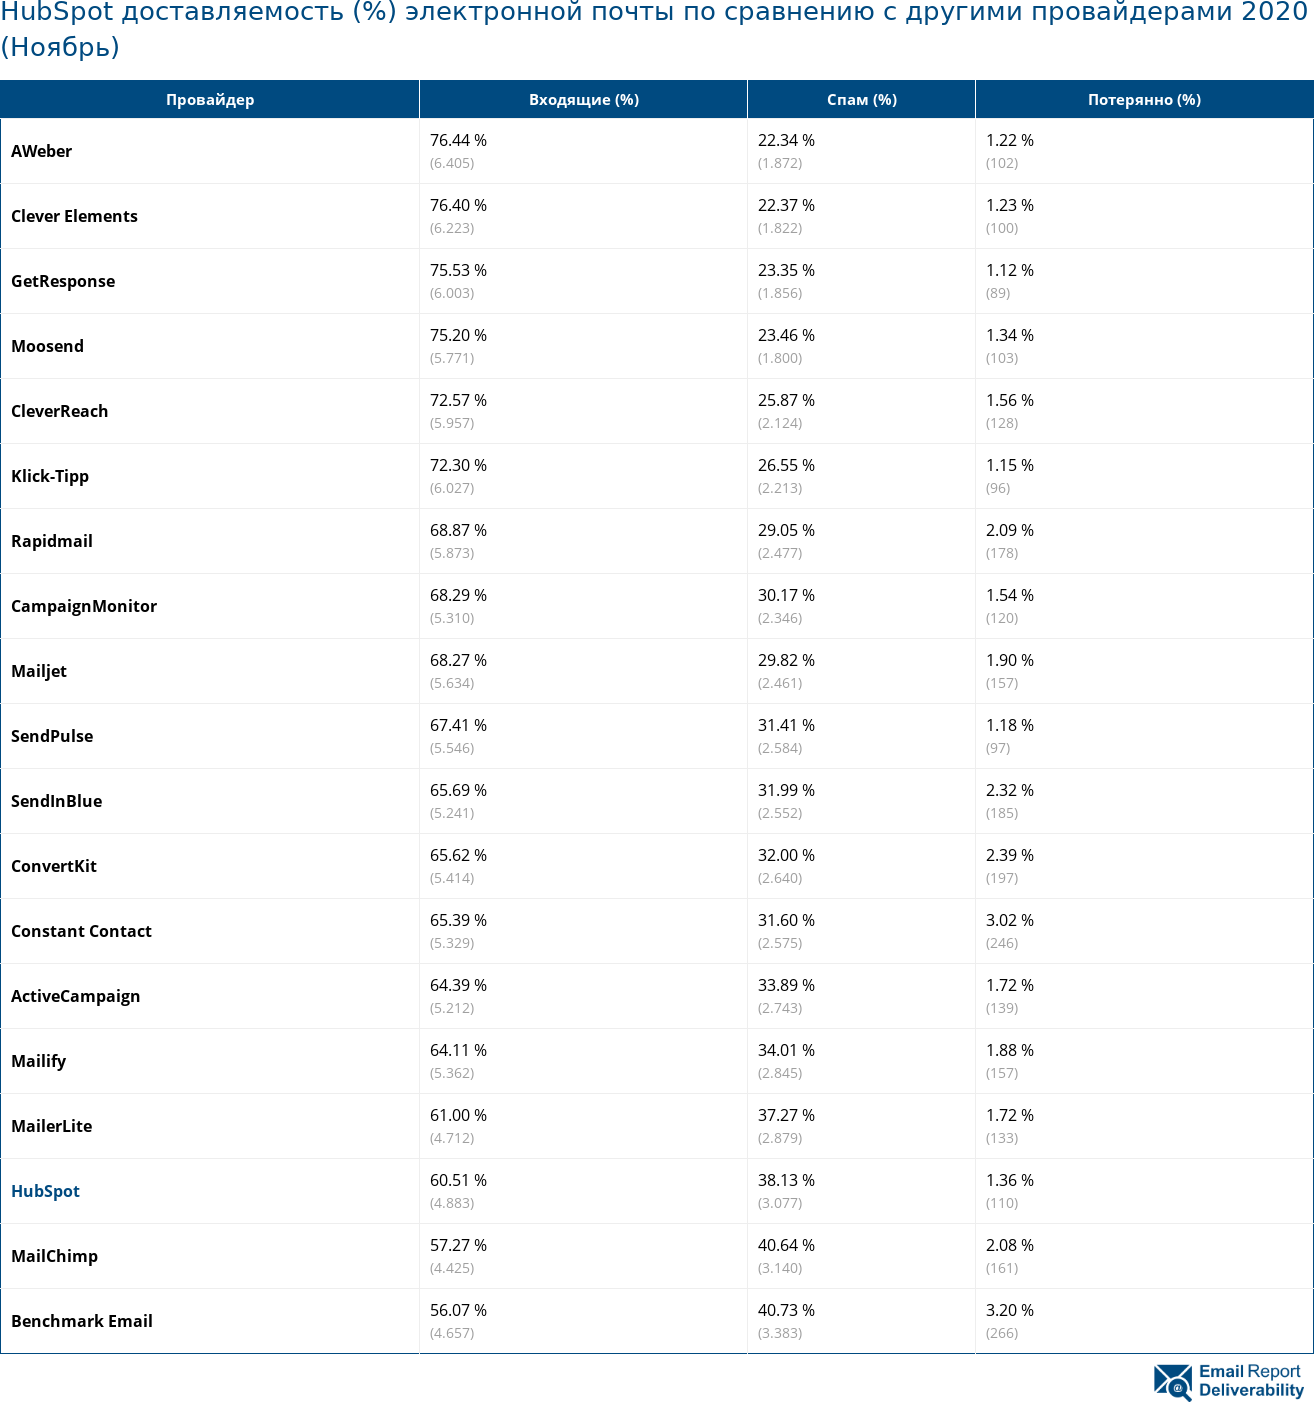 HubSpot доставляемость (%) электронной почты по сравнению с другими провайдерами 2020 (Ноябрь)